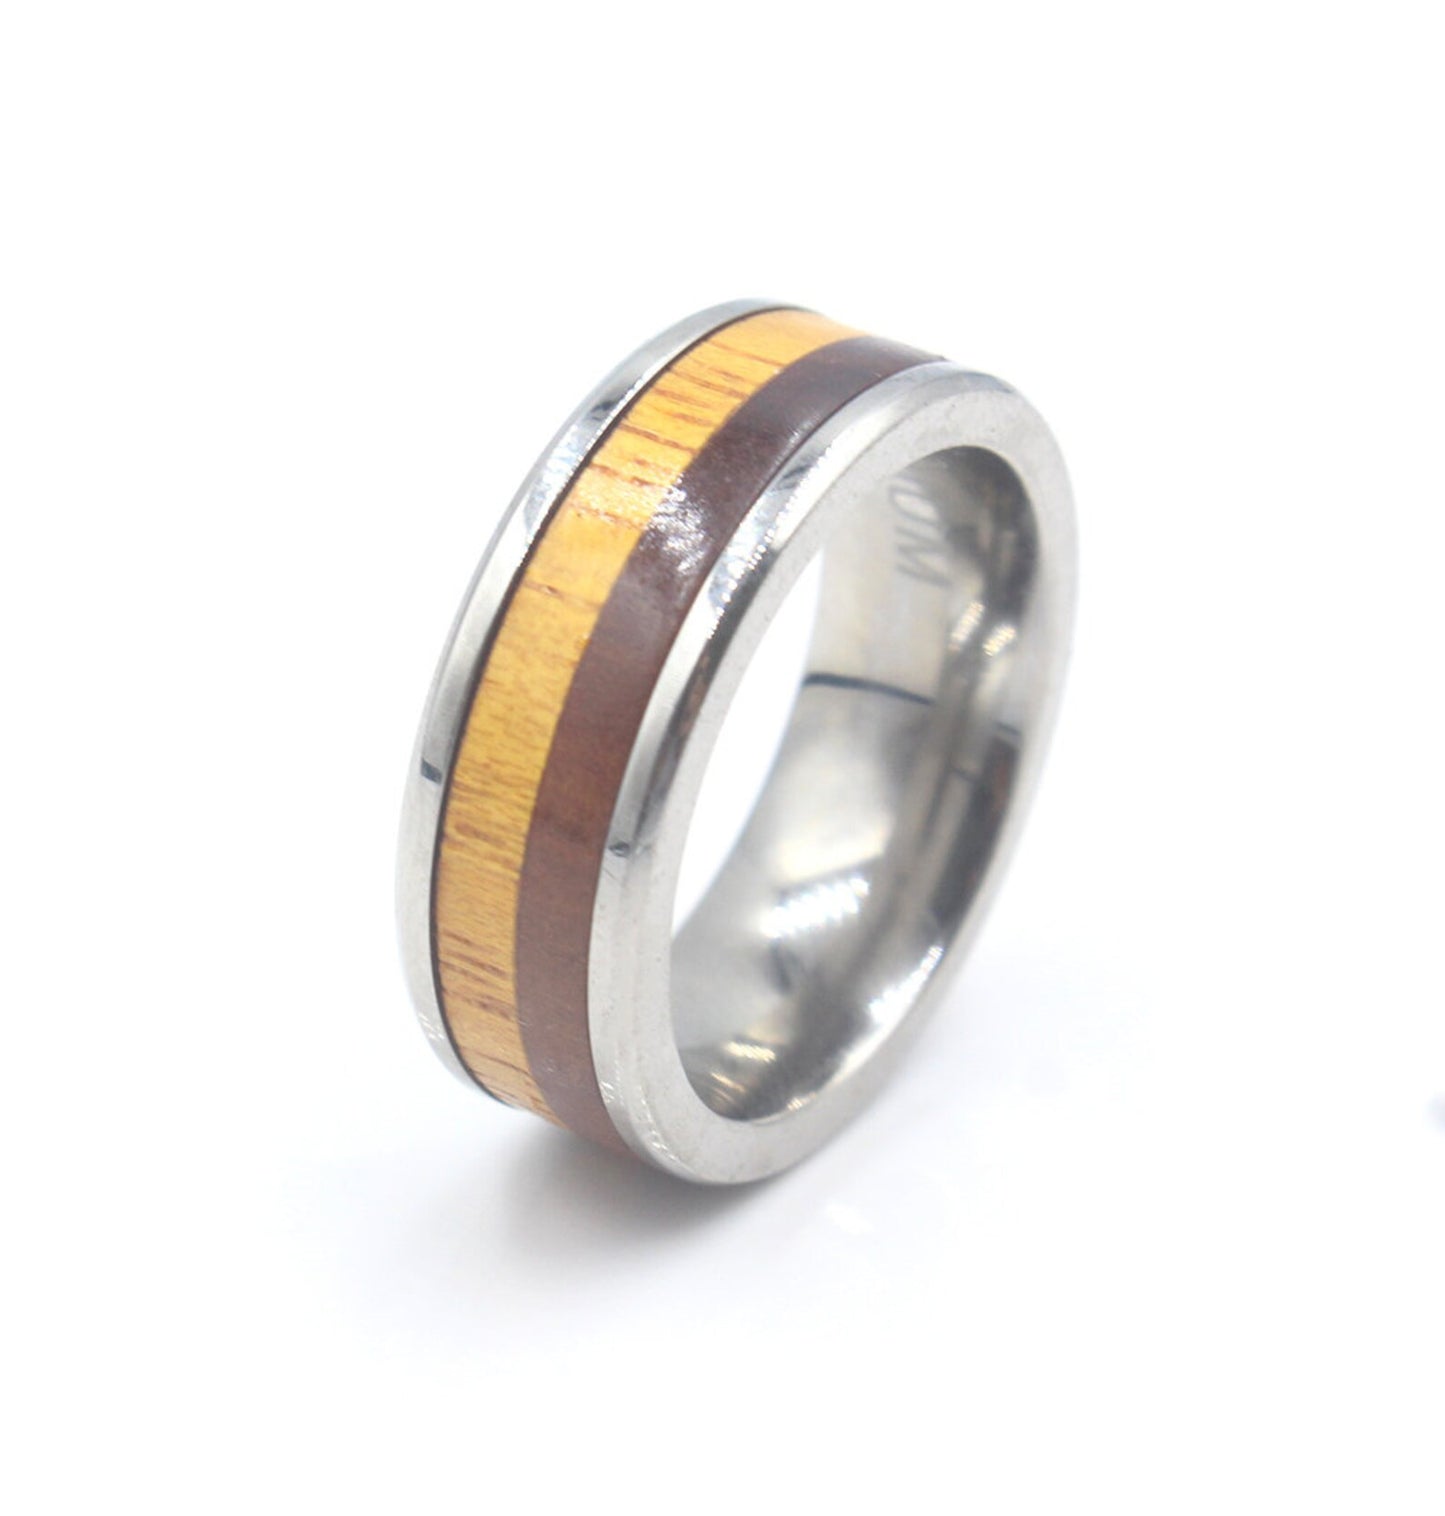 Merbau and Jackfruit Wood Ring